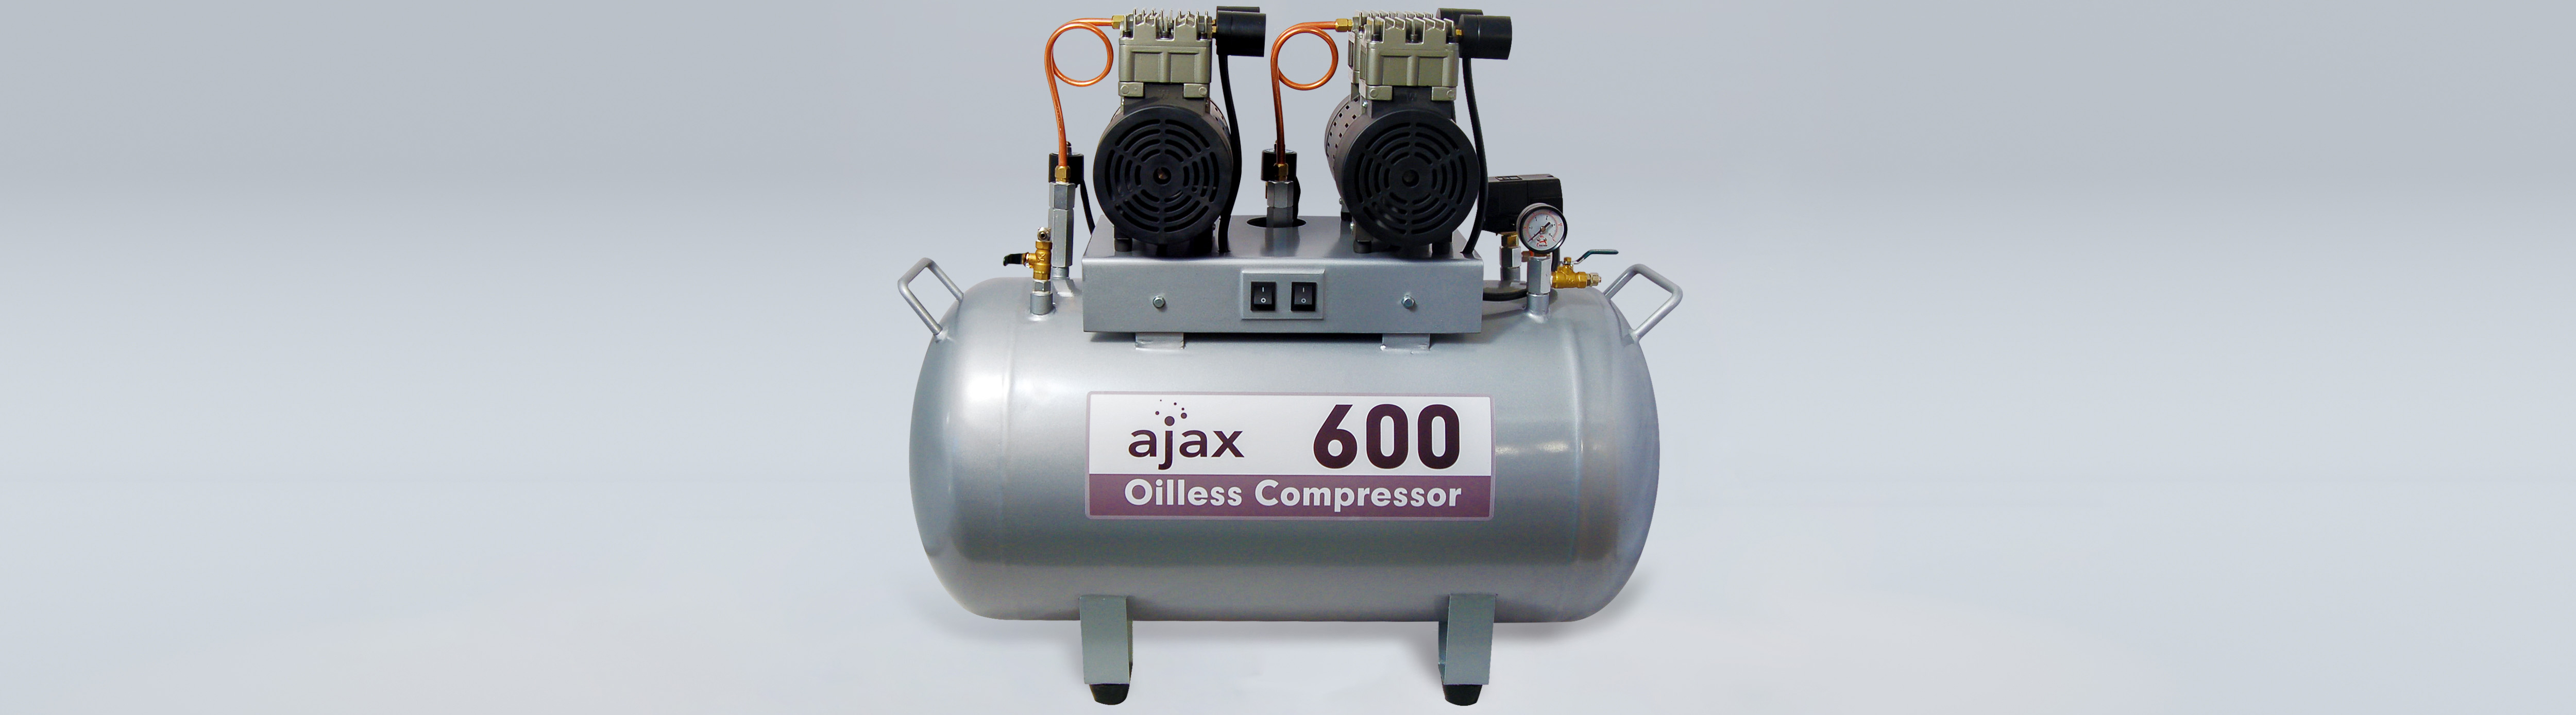 Compresseur d'air Ajax 600